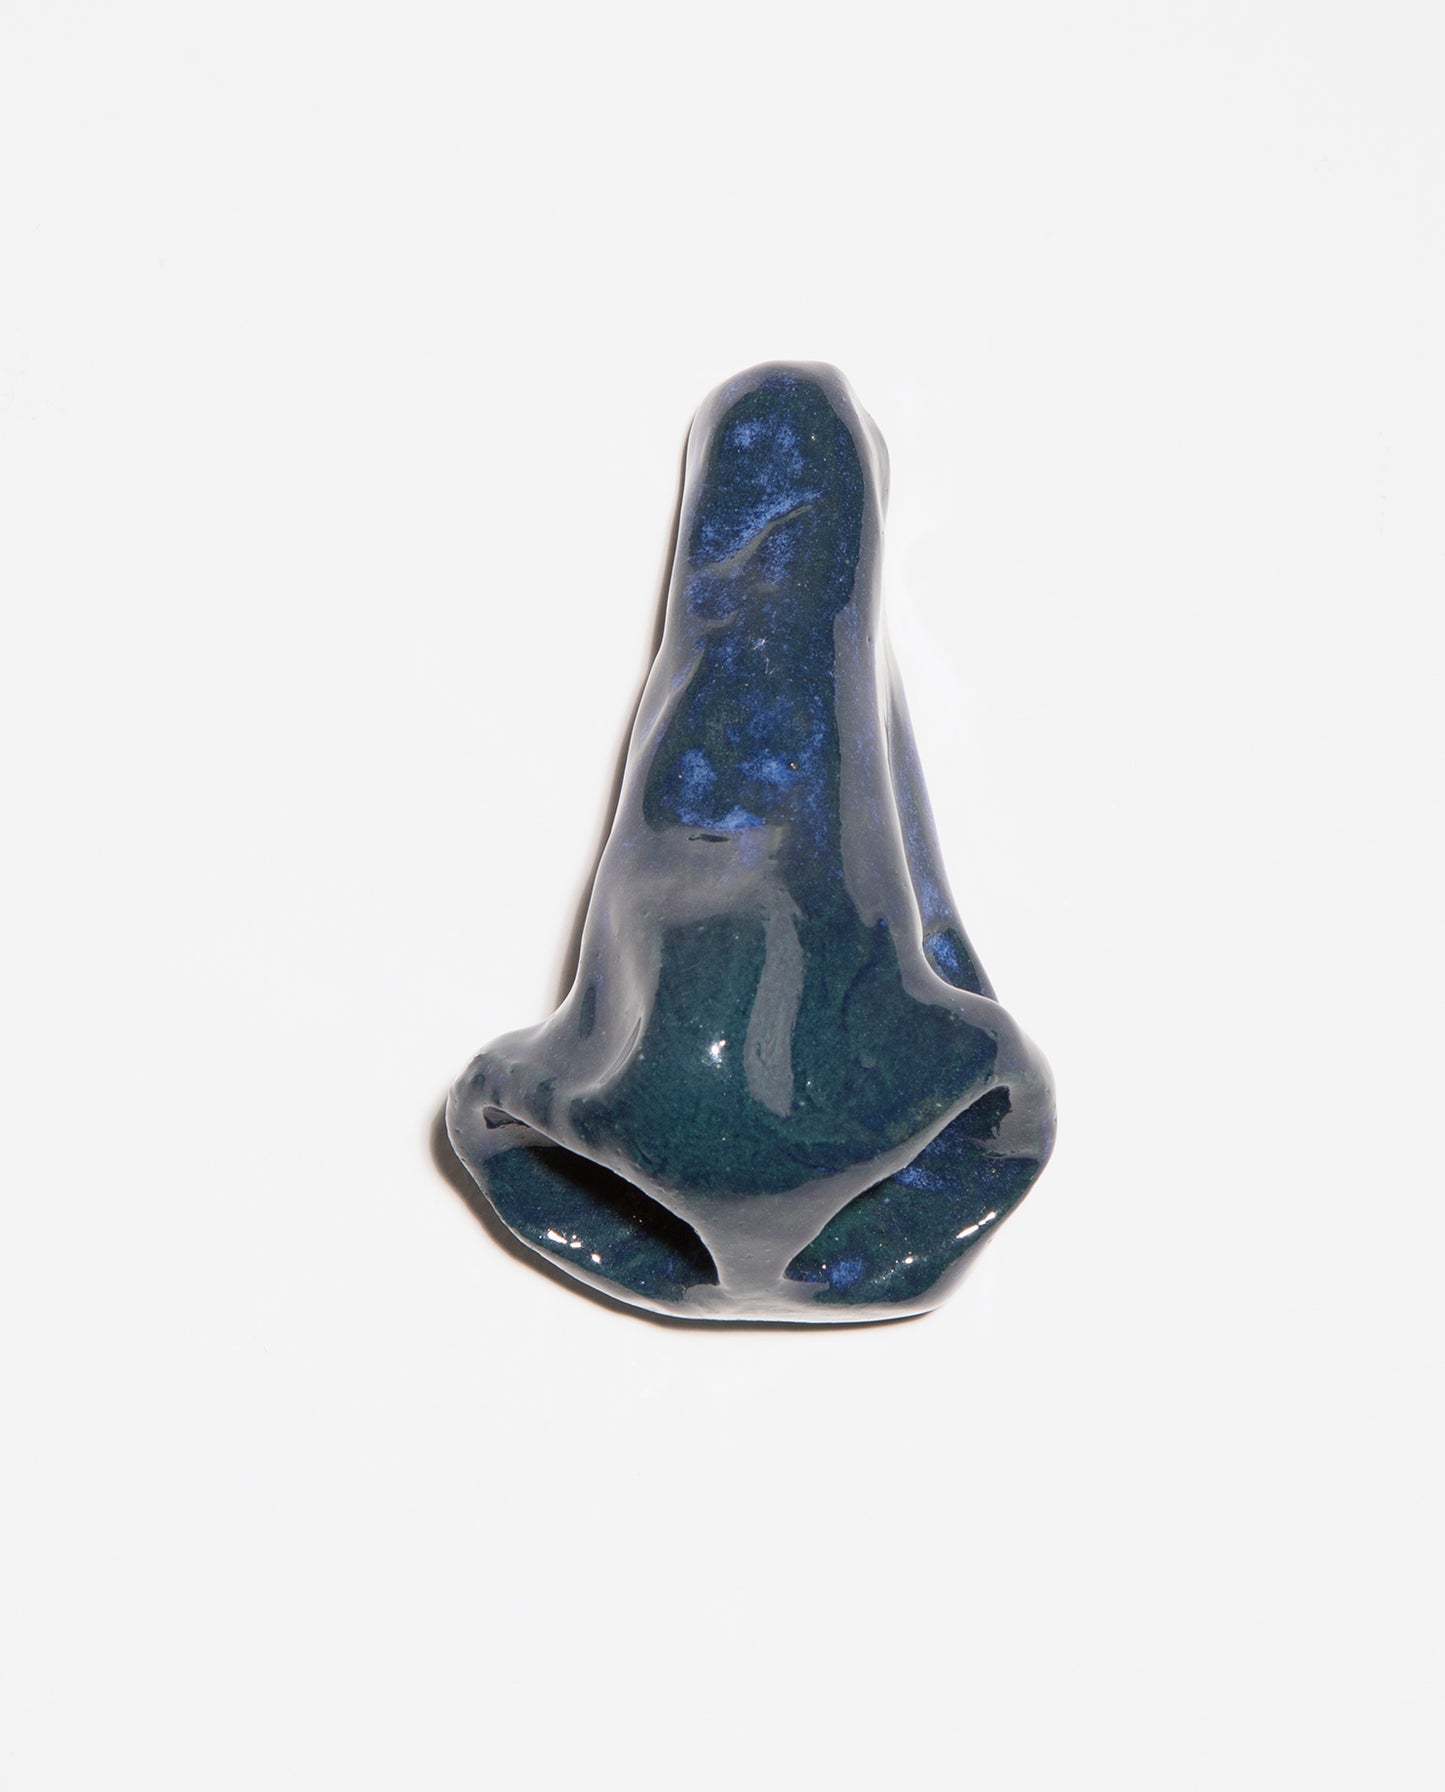 Petite sculpture. Nez en céramique grès émaillé bleu avec de légère nucléations bleues claires